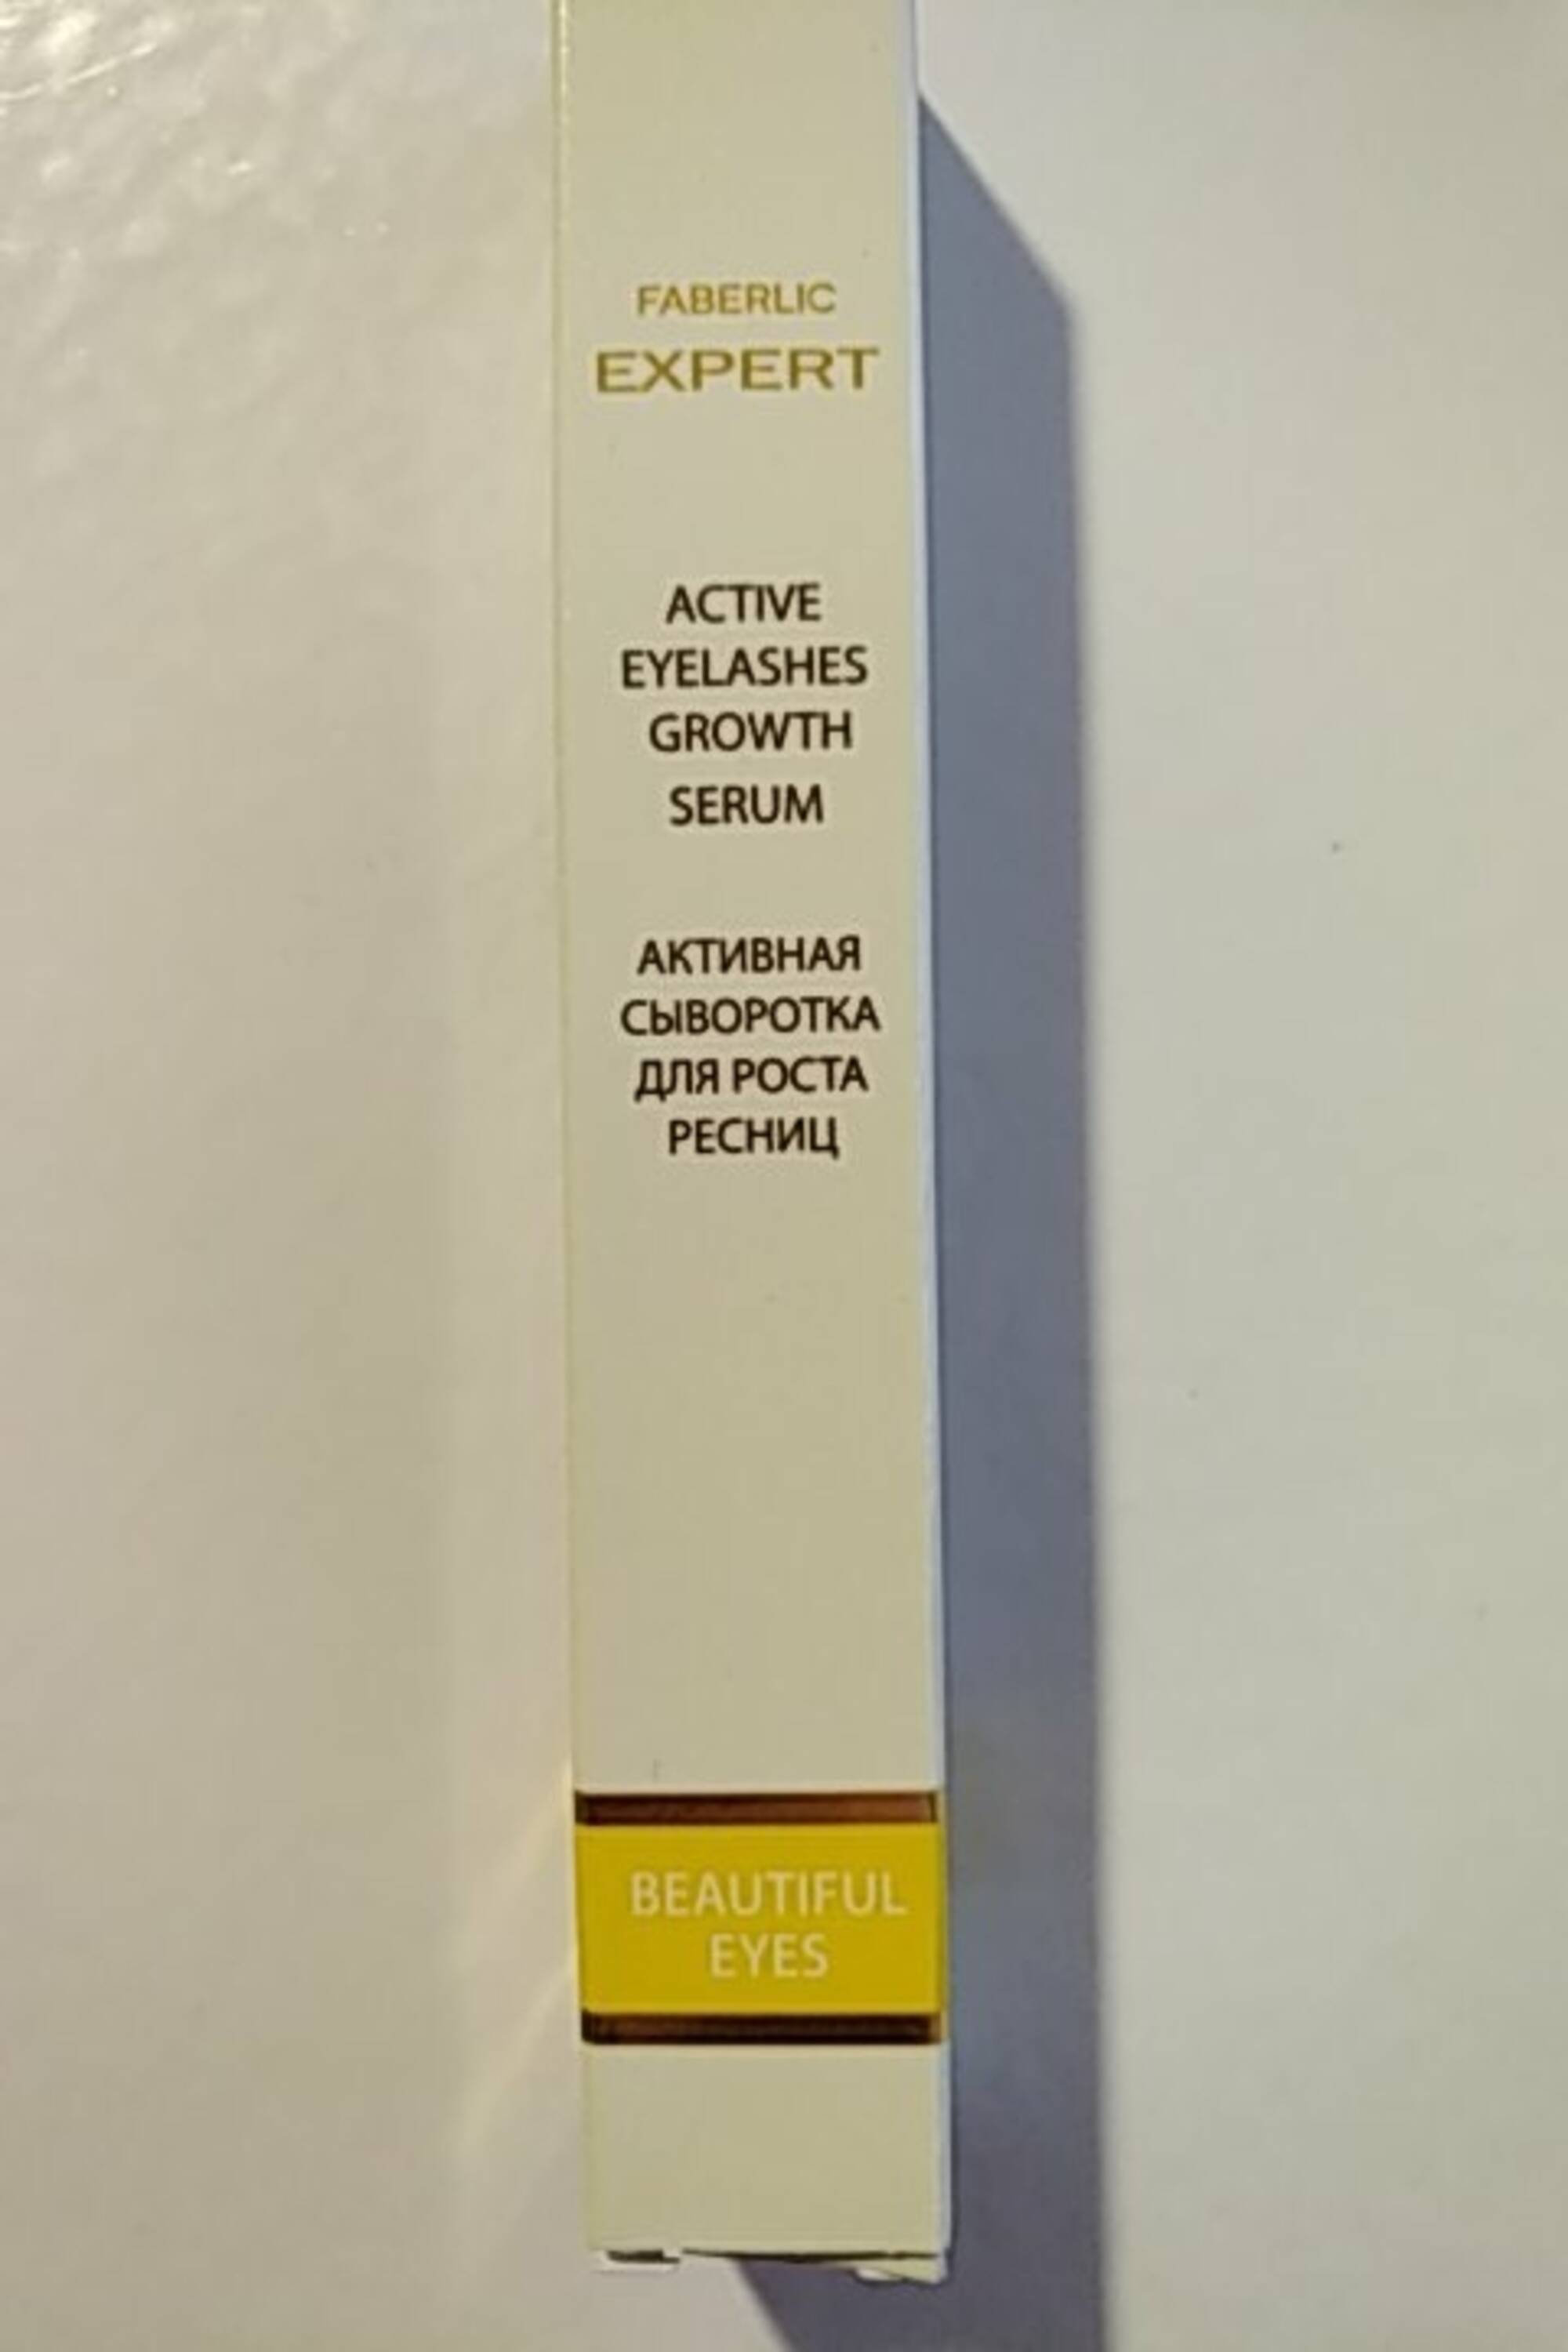 FABERLIC - Expert - Active eyelashes growth serum